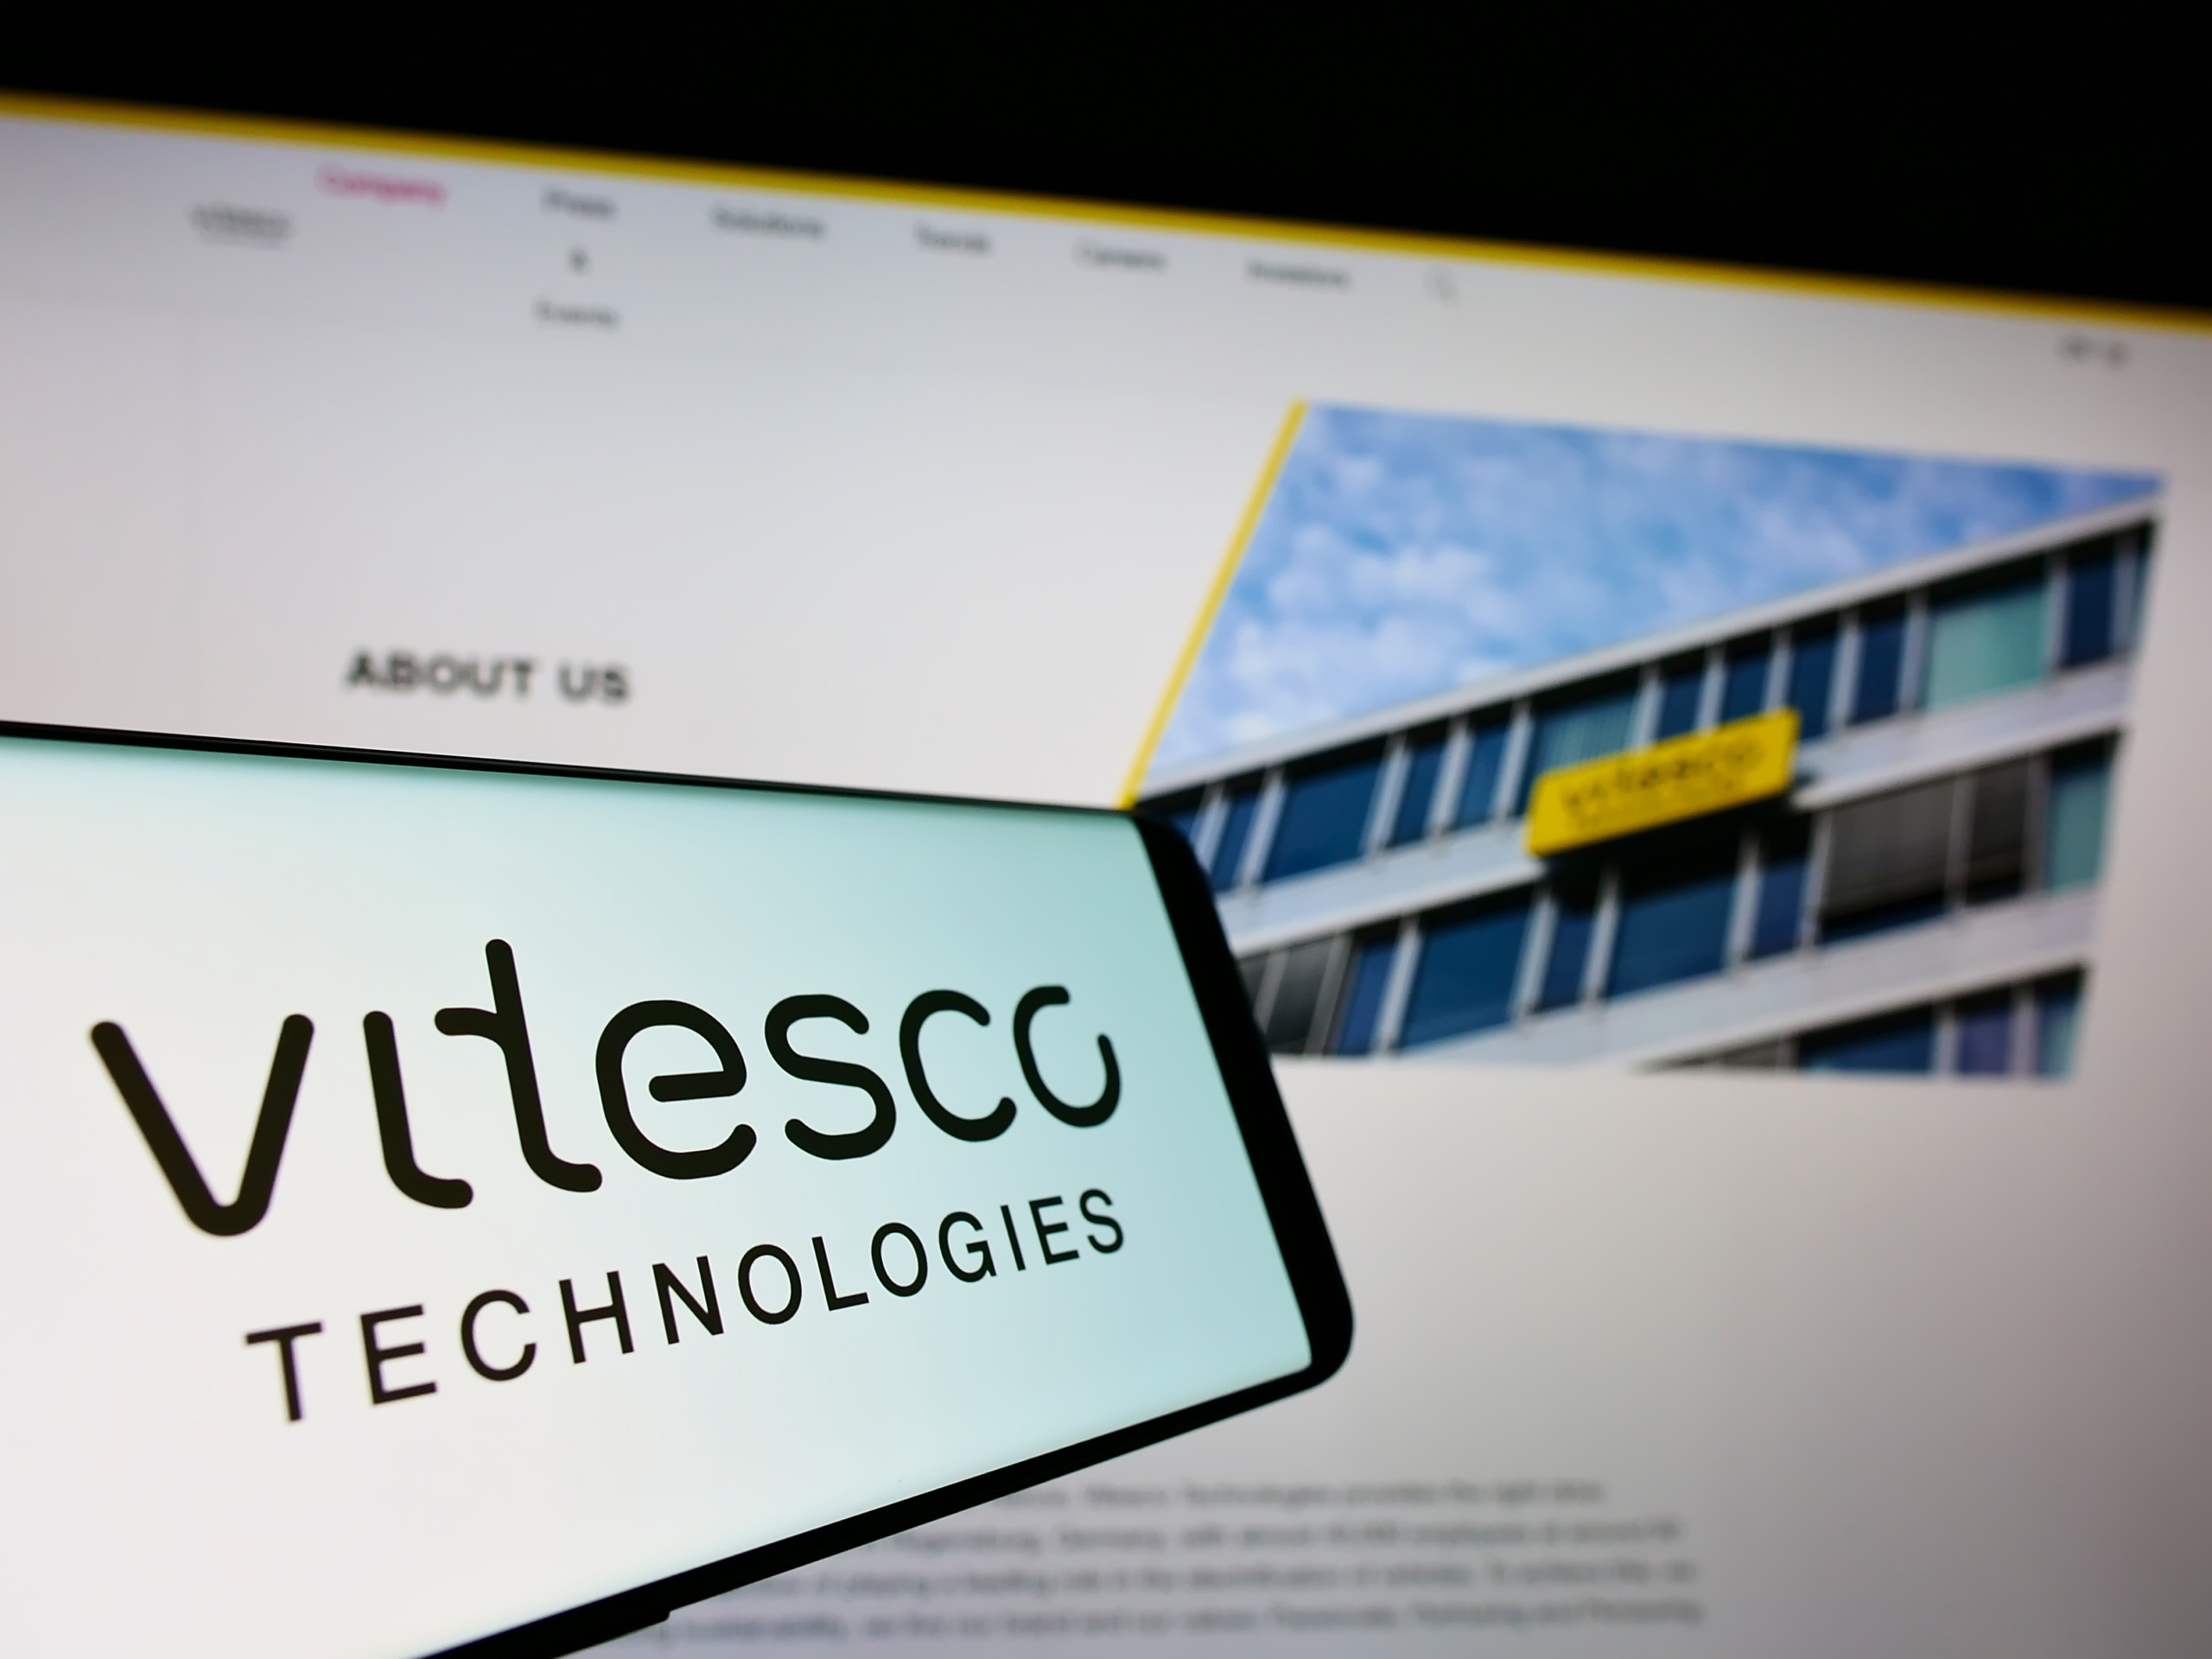 Vitesco Technologies verkündet Kooperation mit Infineon